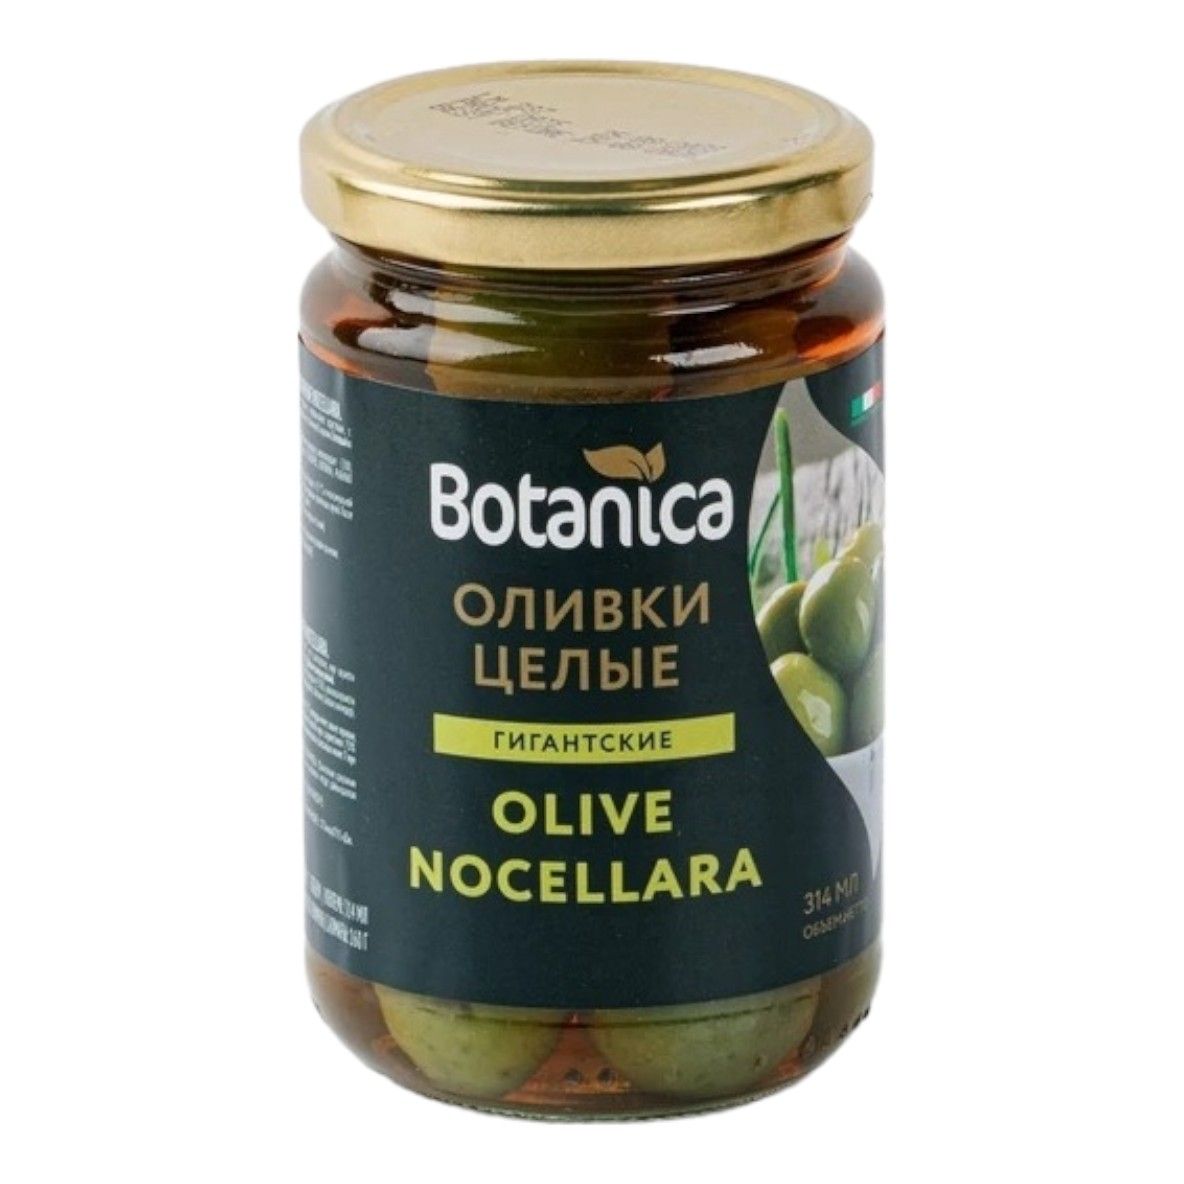 Оливки Botanica Nocellara целые с косточкой 314 мл